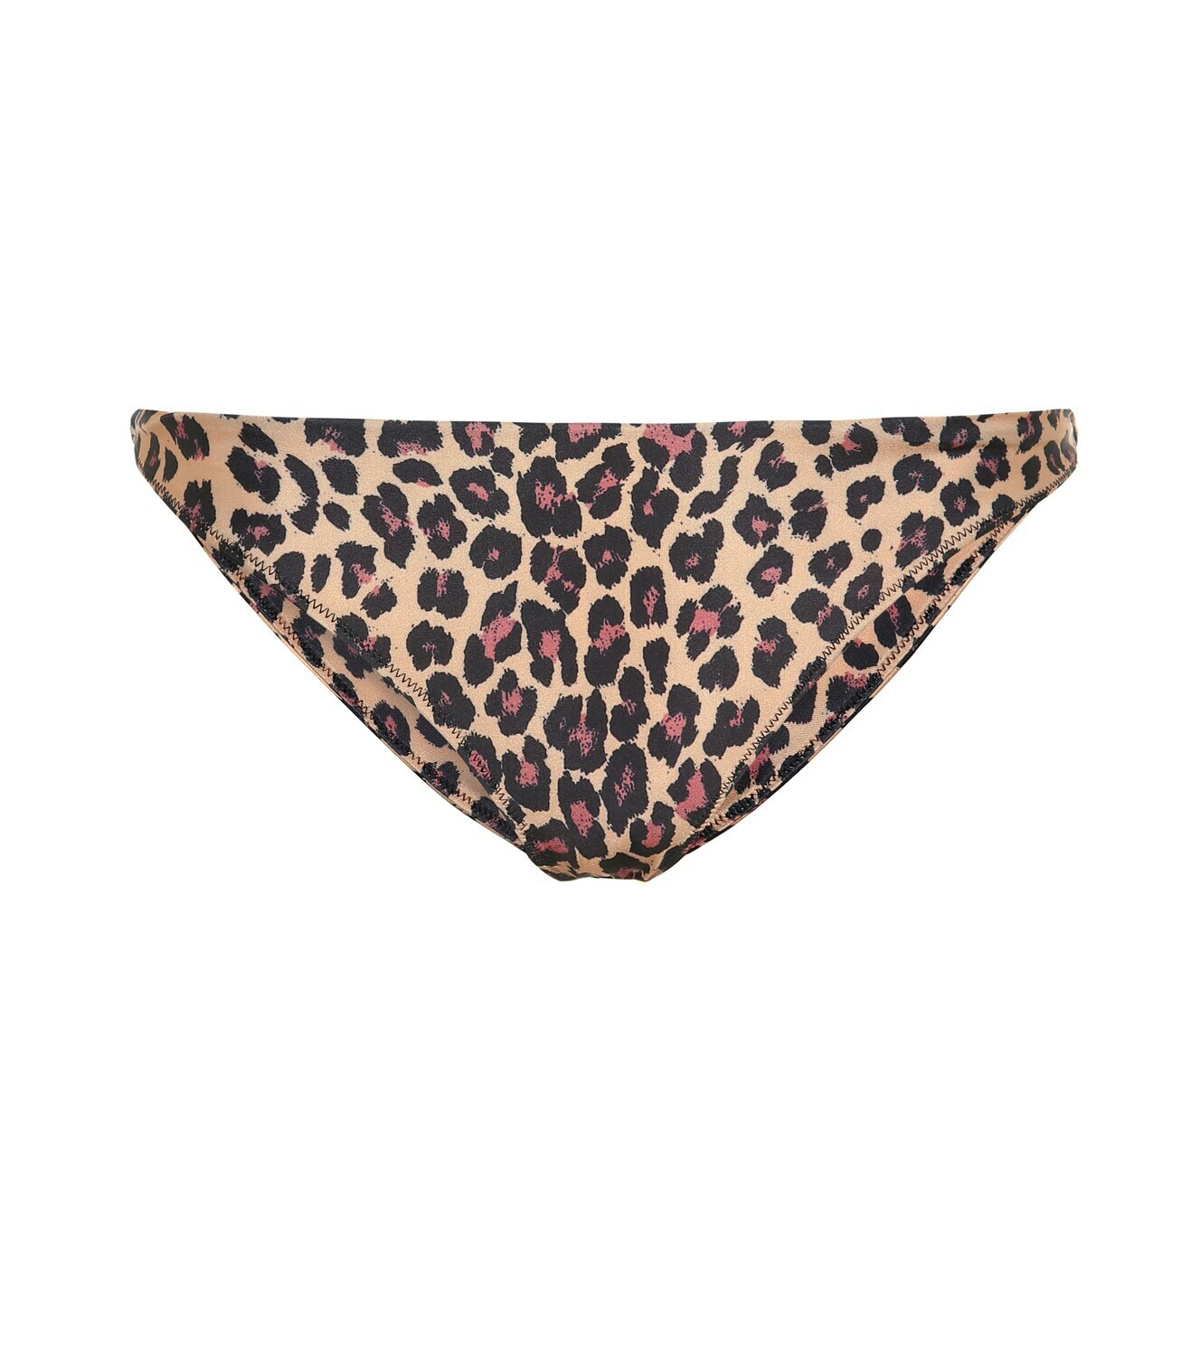 Simkhai - Leopard bikini bottoms Simkhai